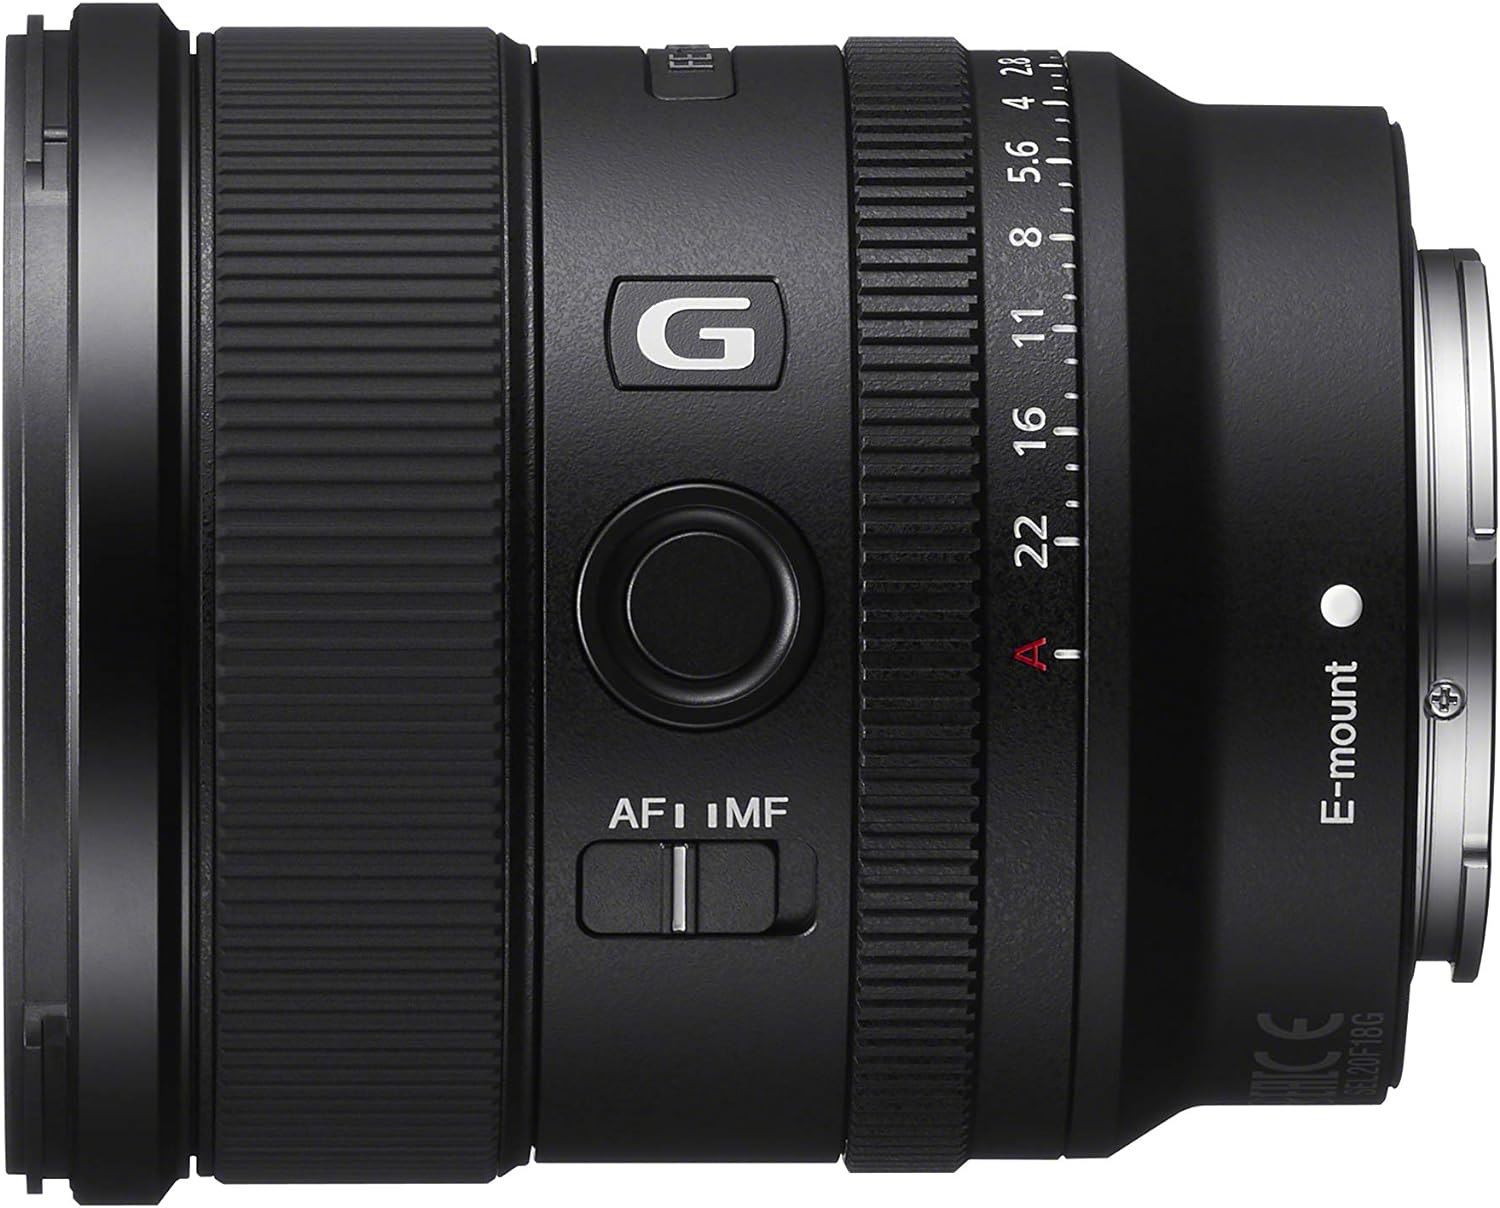 Sony SEL20F18G FE 20mm F1.8 G Full-Frame Large-Aperture Ultra-Wide Angle G Lens